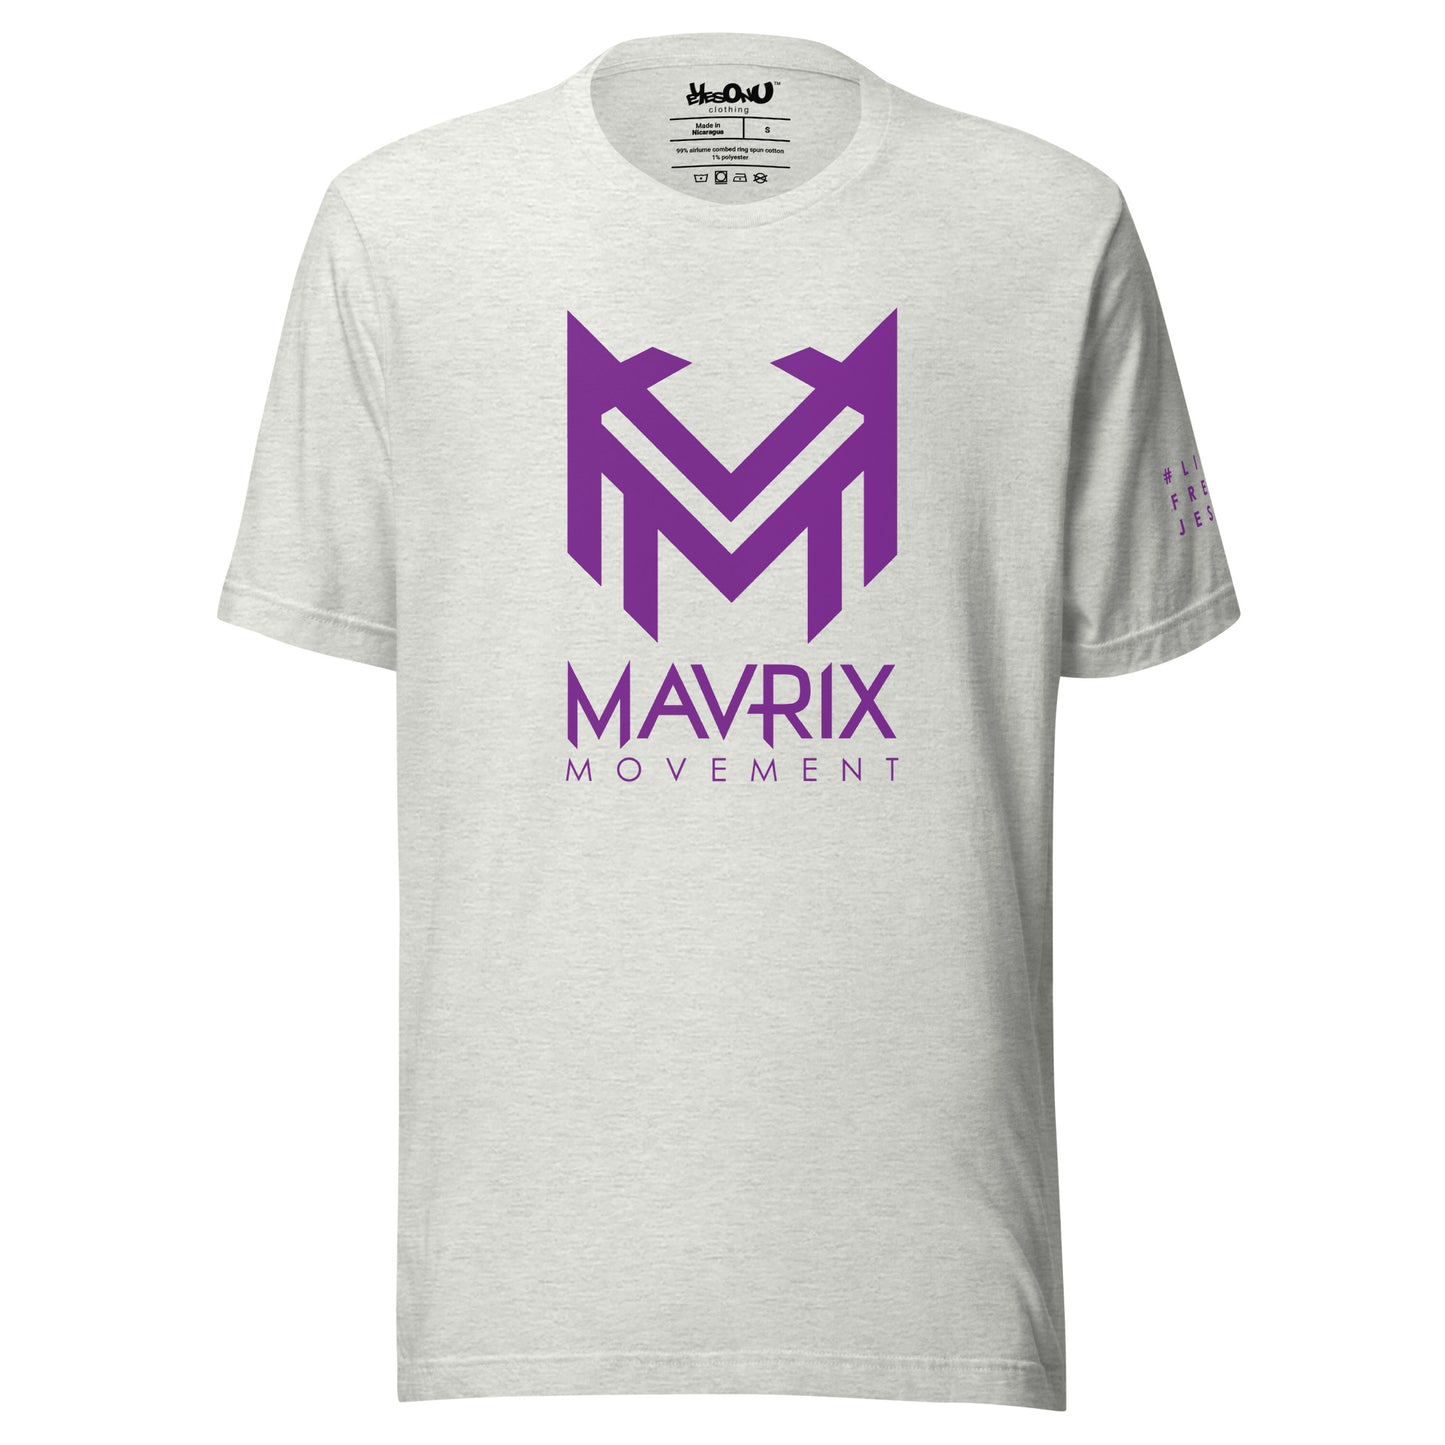 Mavrix Signature T-Shirt (12 colors)